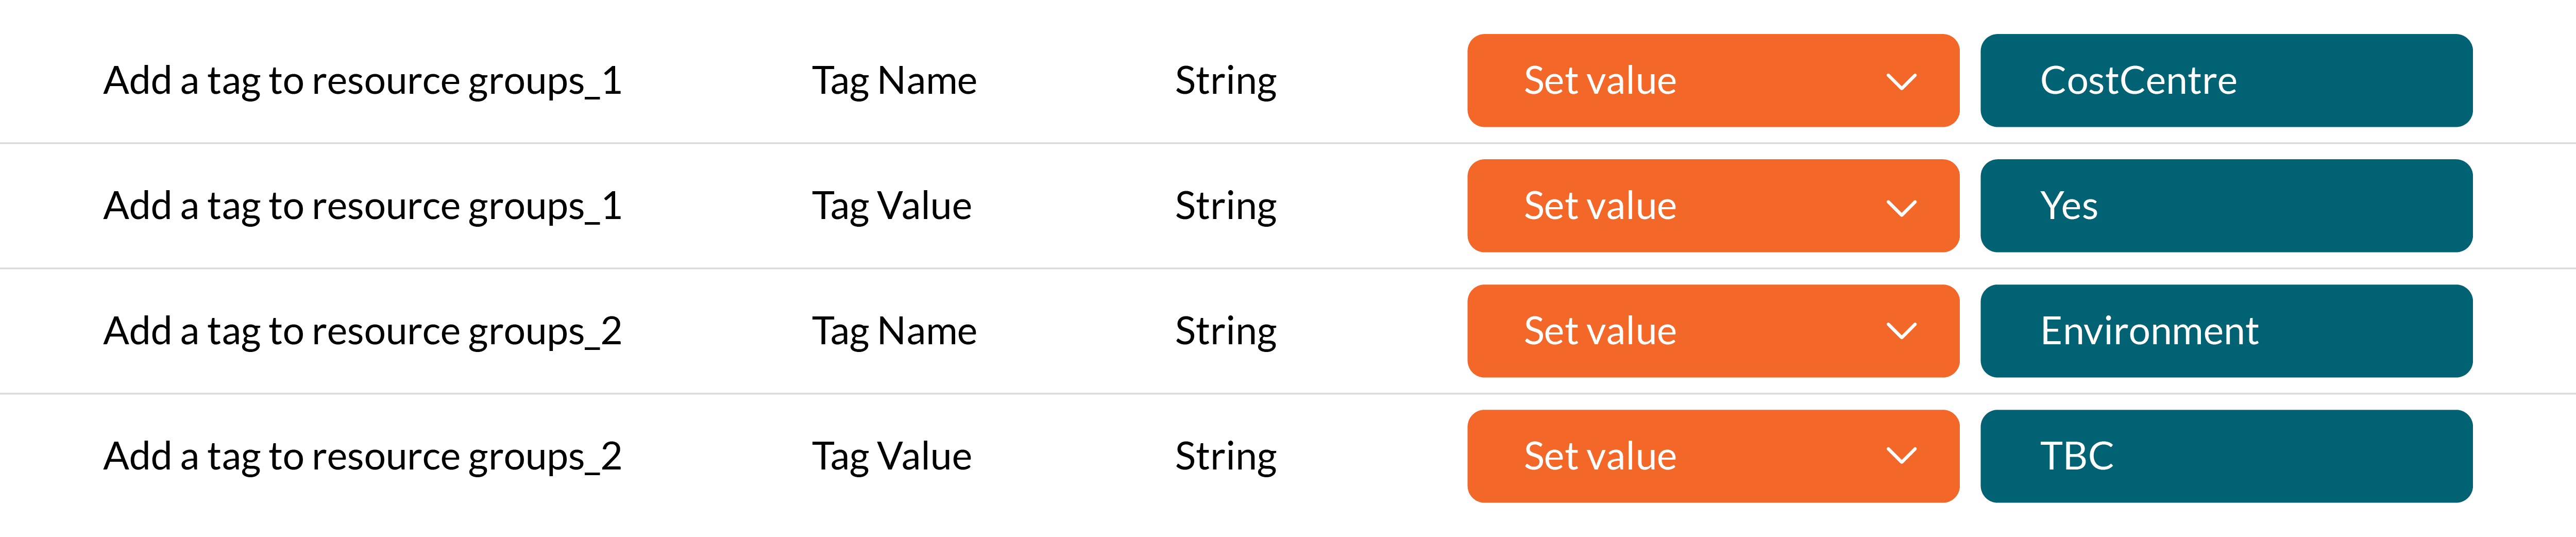 Visual showing tag names and tag values